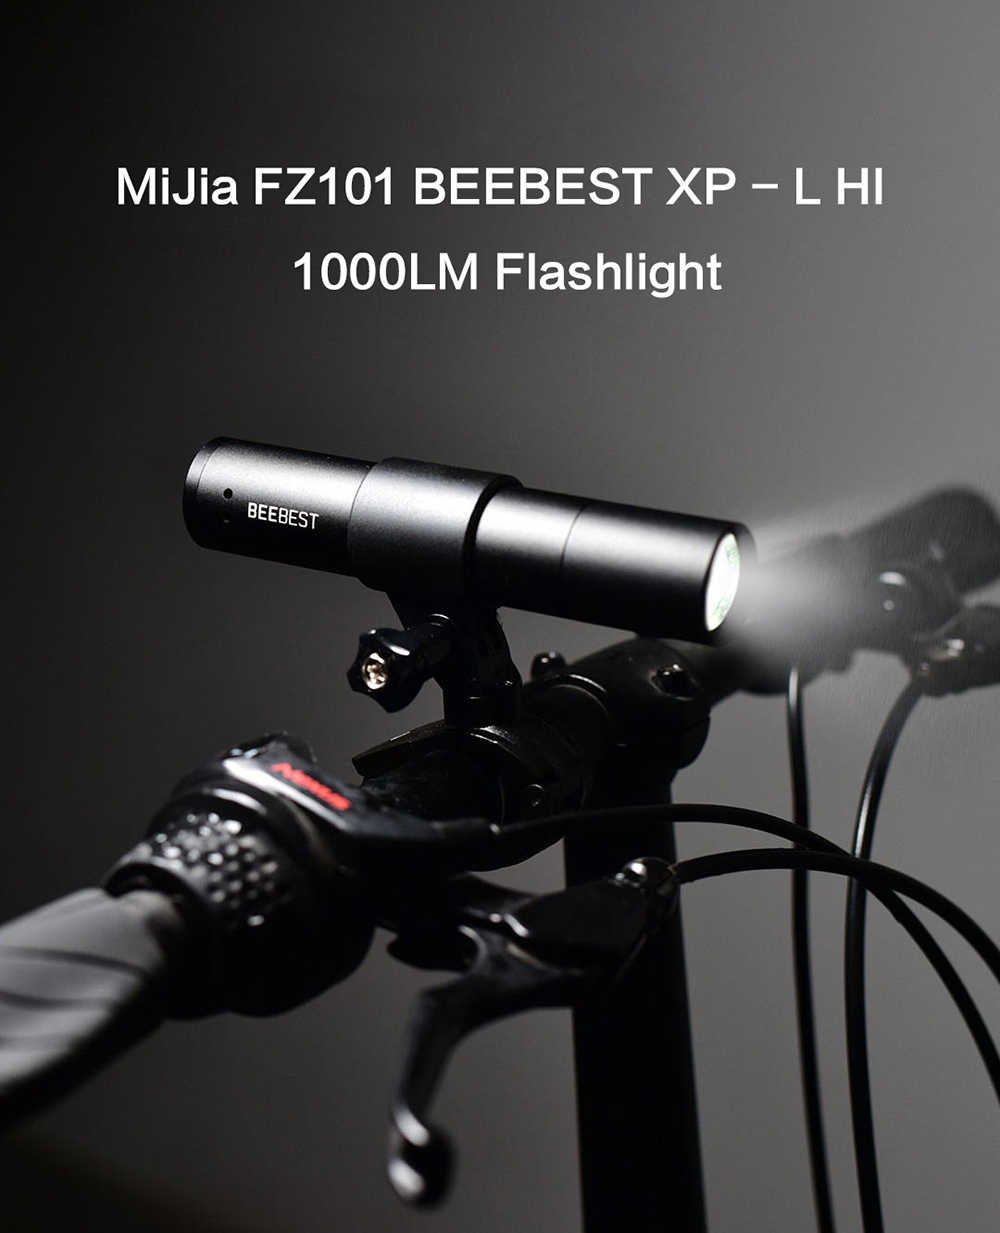 MIJIA FZ101 BEEBEST XP - L HI 1000LM Flashlight